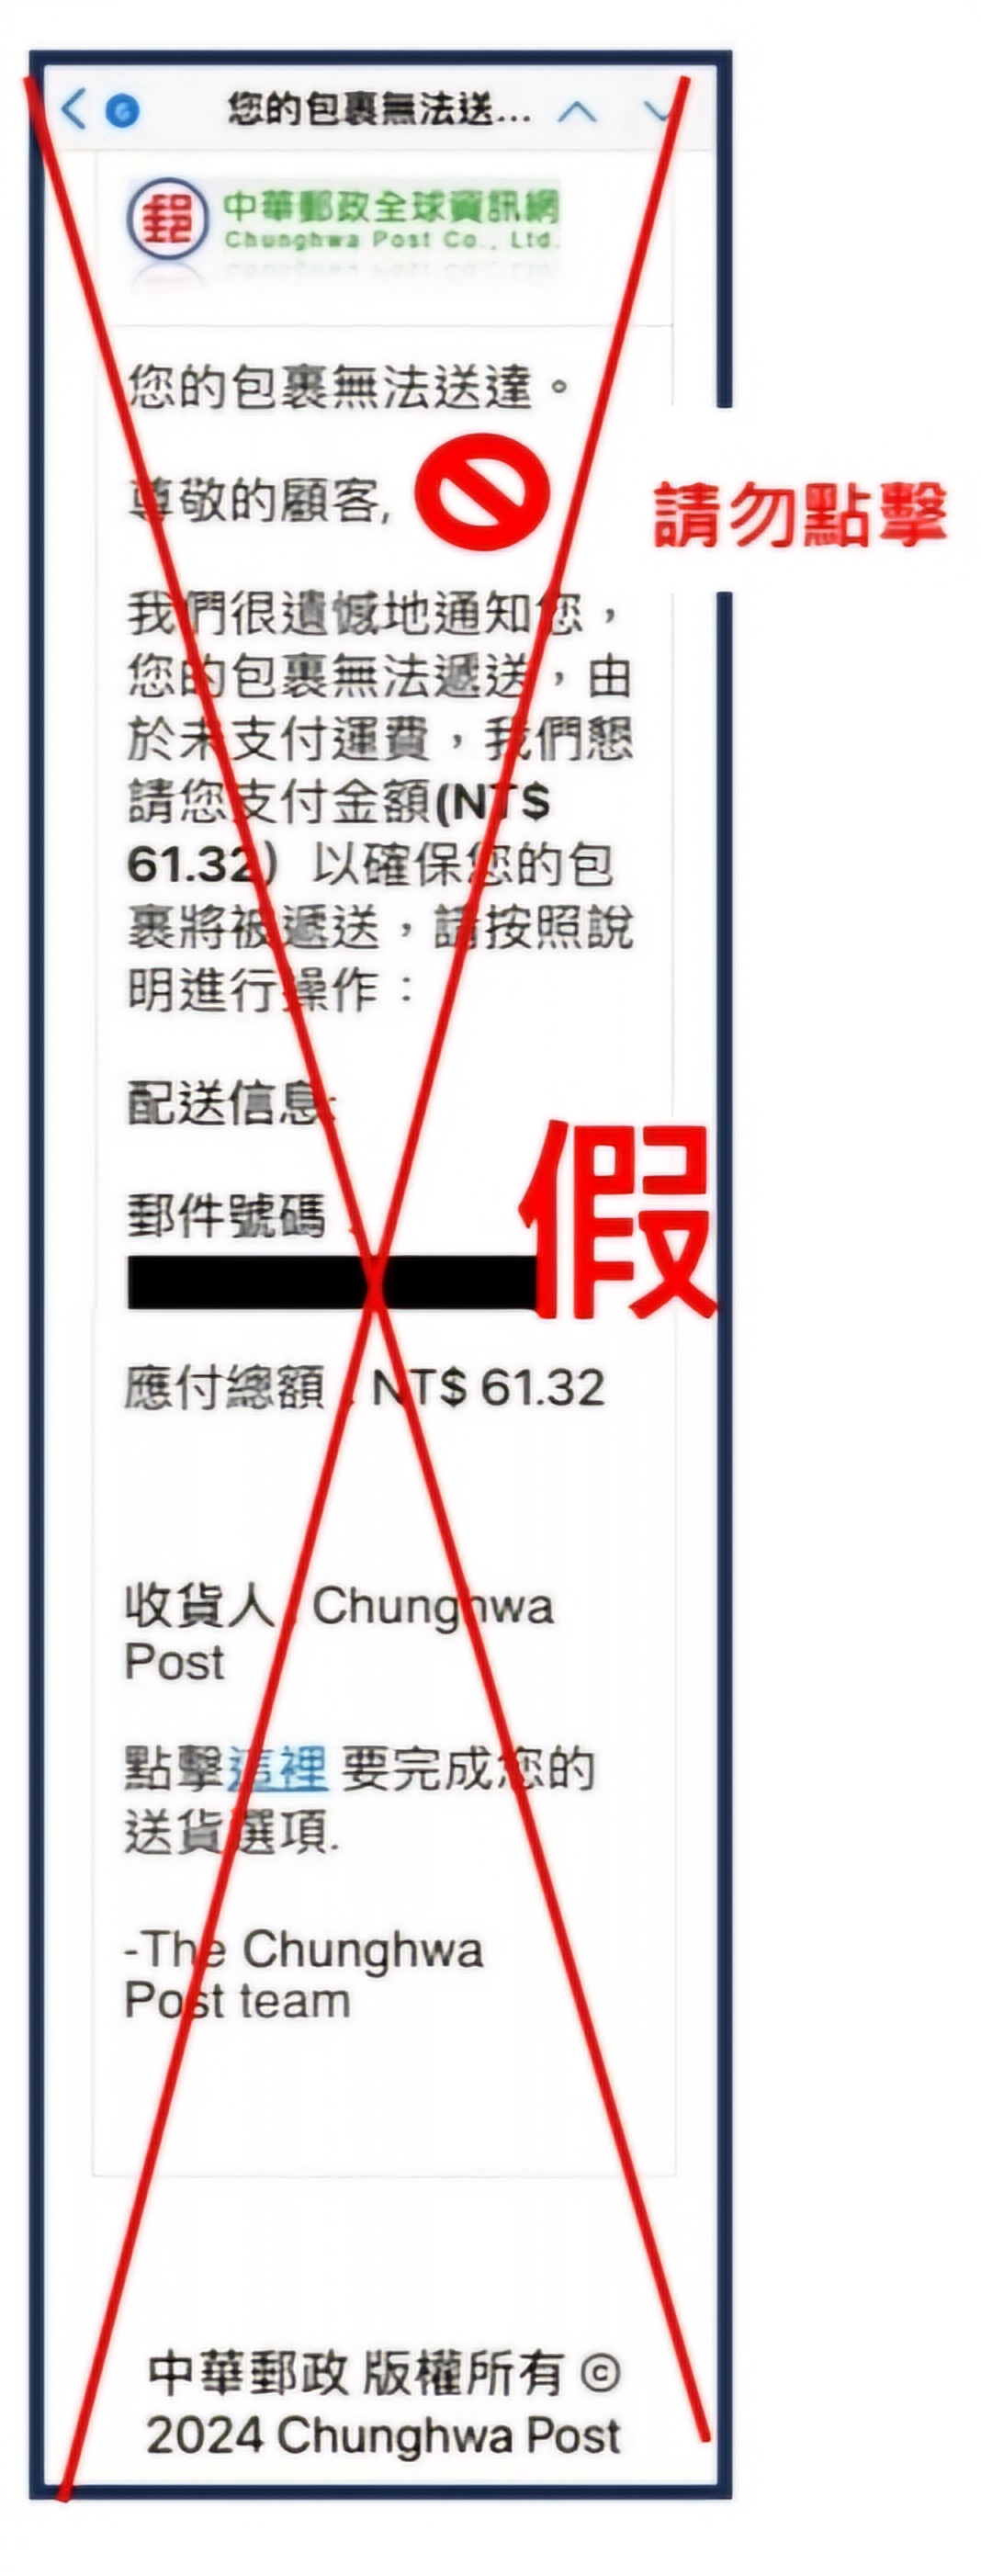 詐騙集團假冒中華郵政公司發送主旨為「您的包裹無法送達」電子郵件，籲請民眾勿點擊連結，小心防範、慎防受騙。